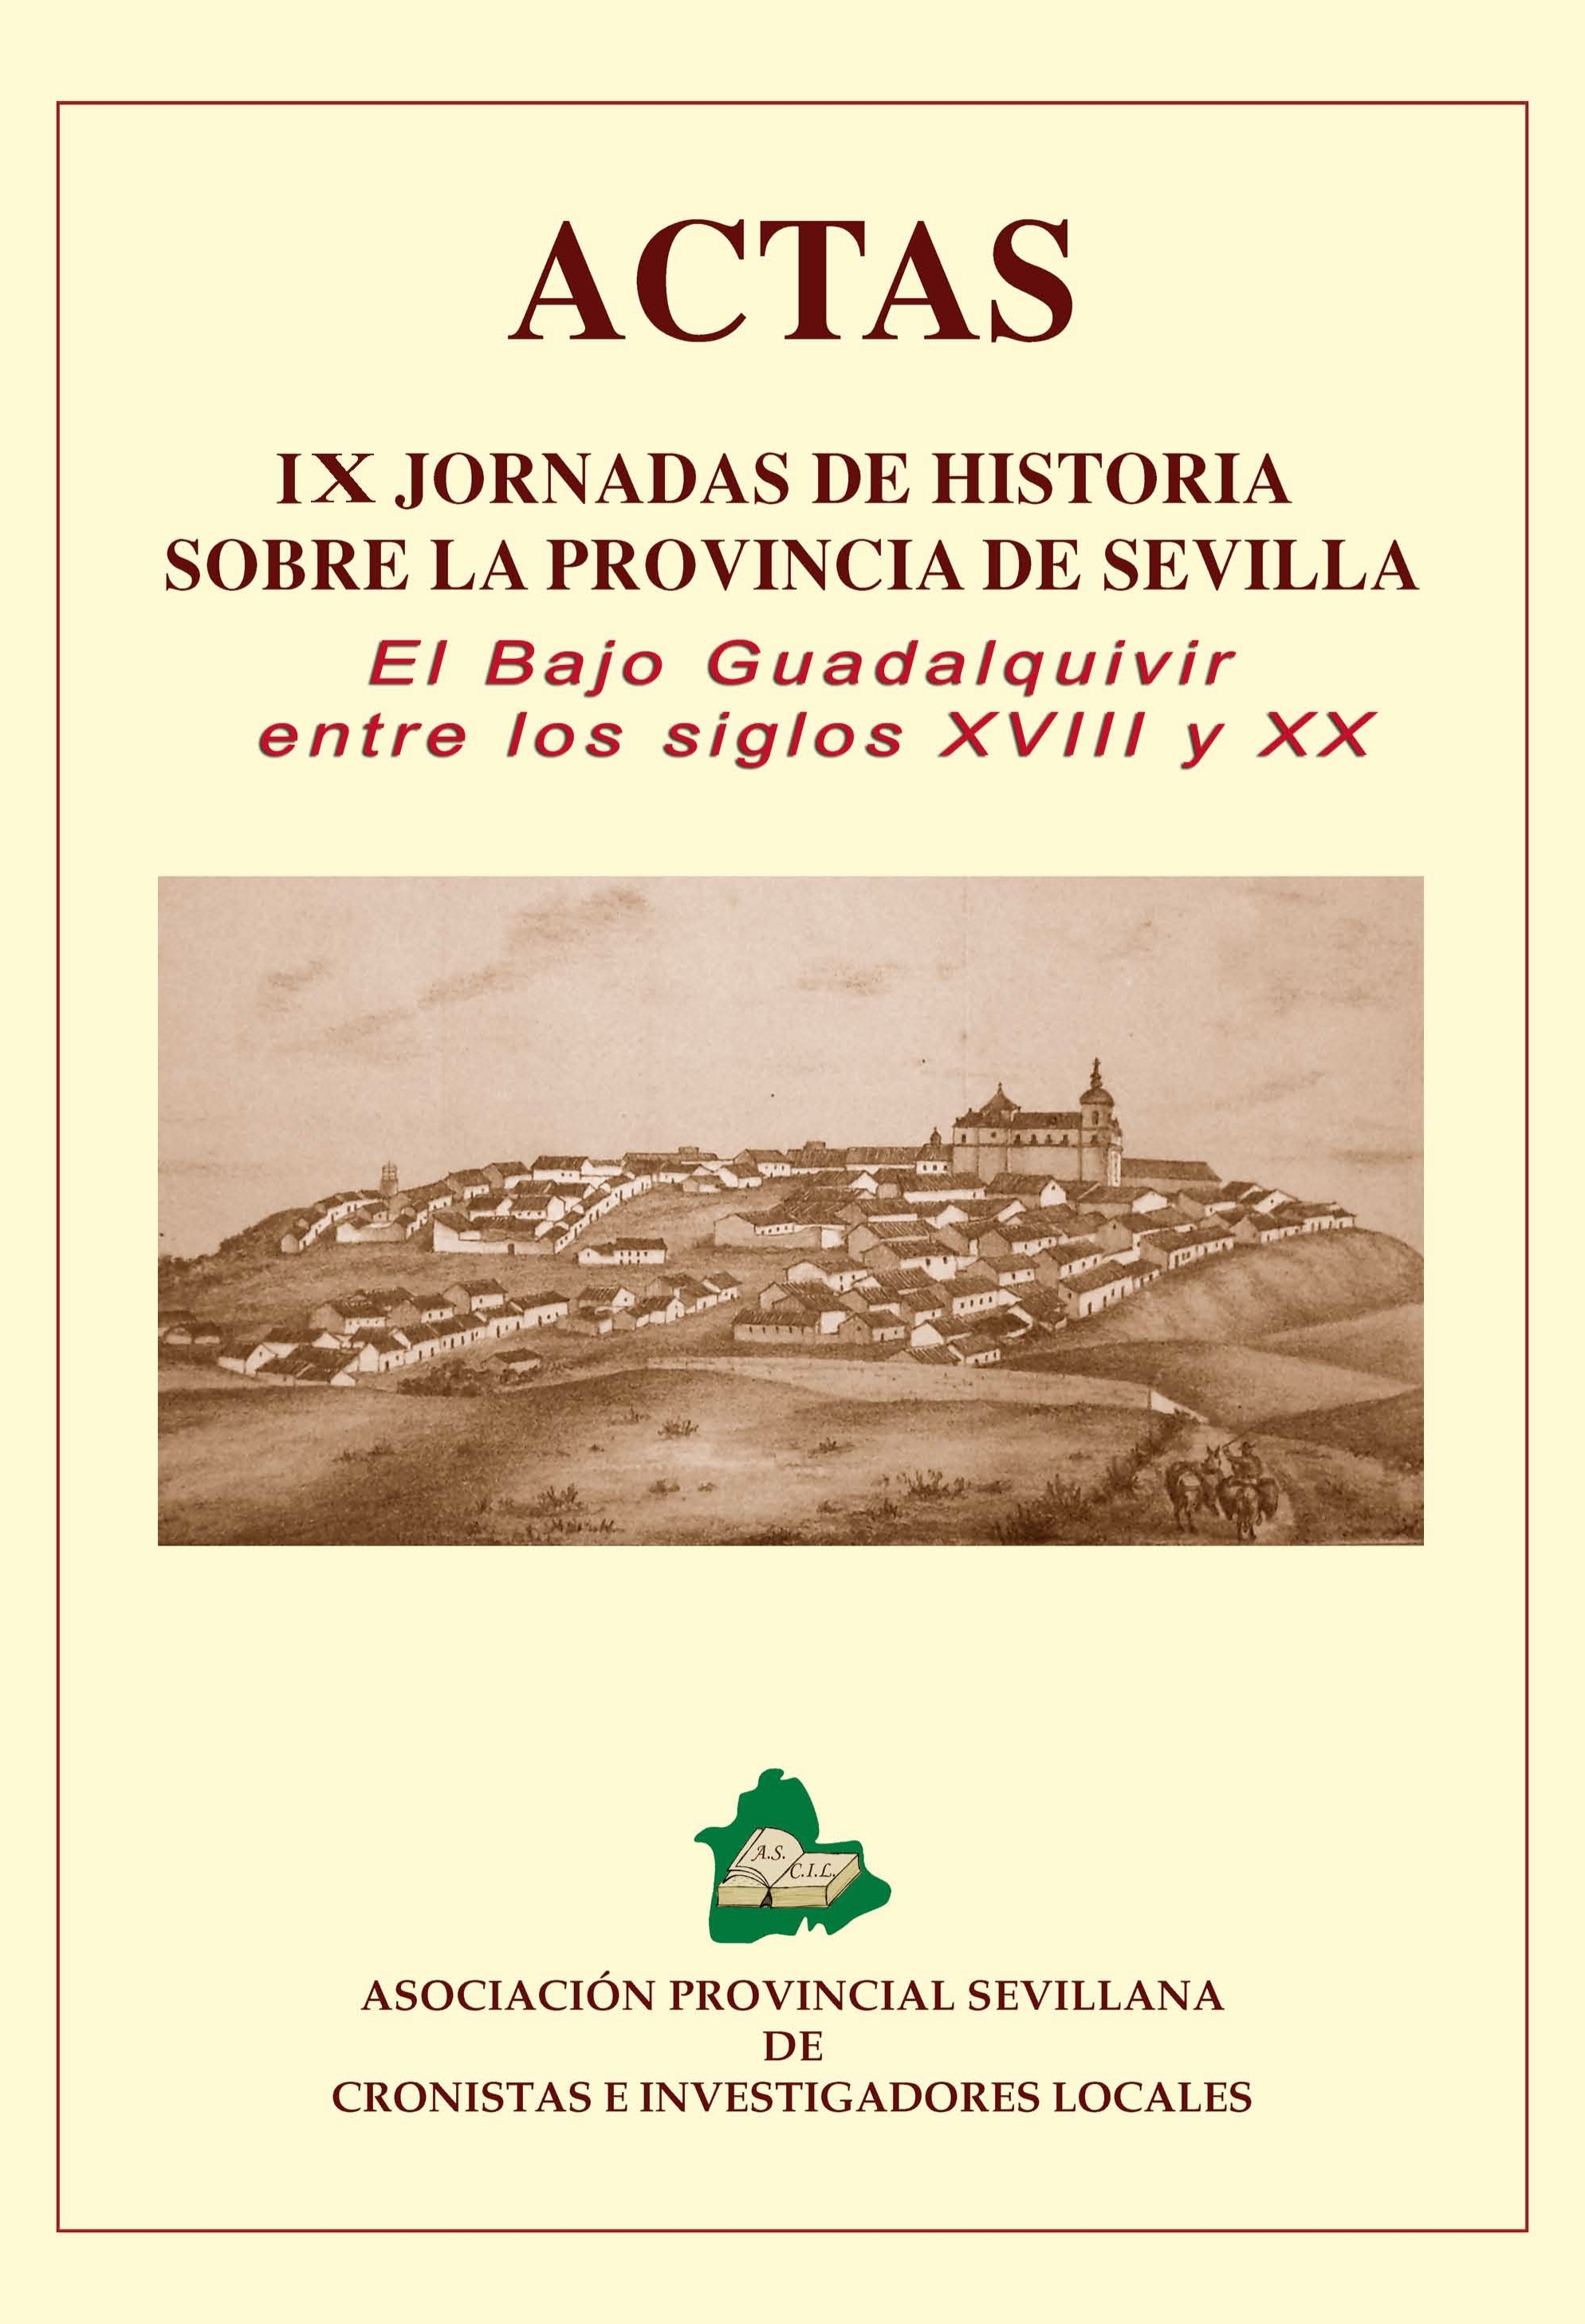 Imagen de portada del libro El Bajo Guadalquivir entre los siglos XVIII y XX